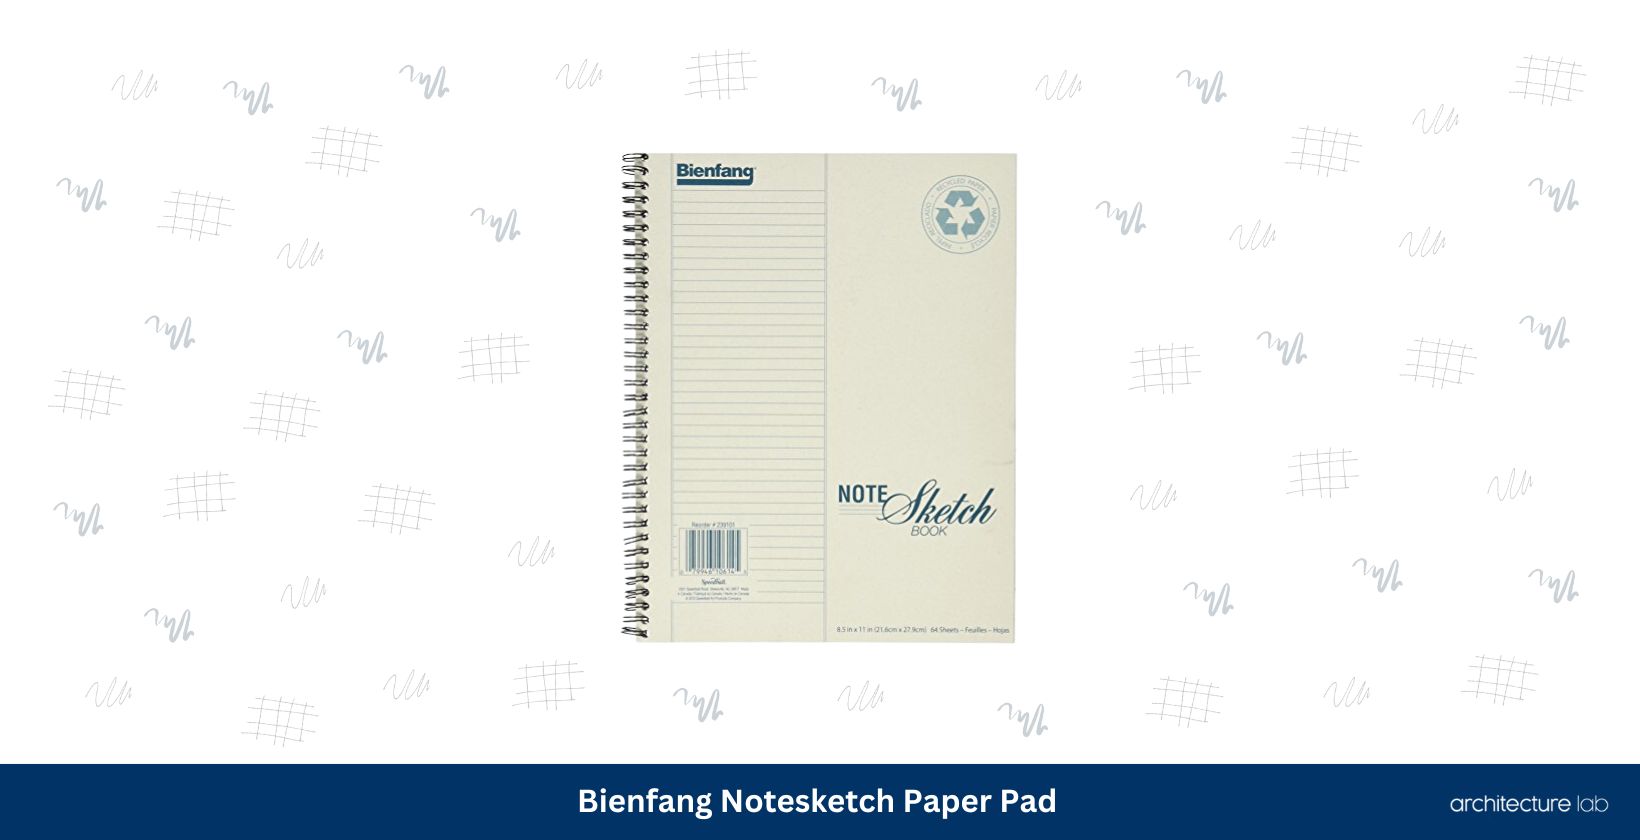 Bienfang notesketch paper pad